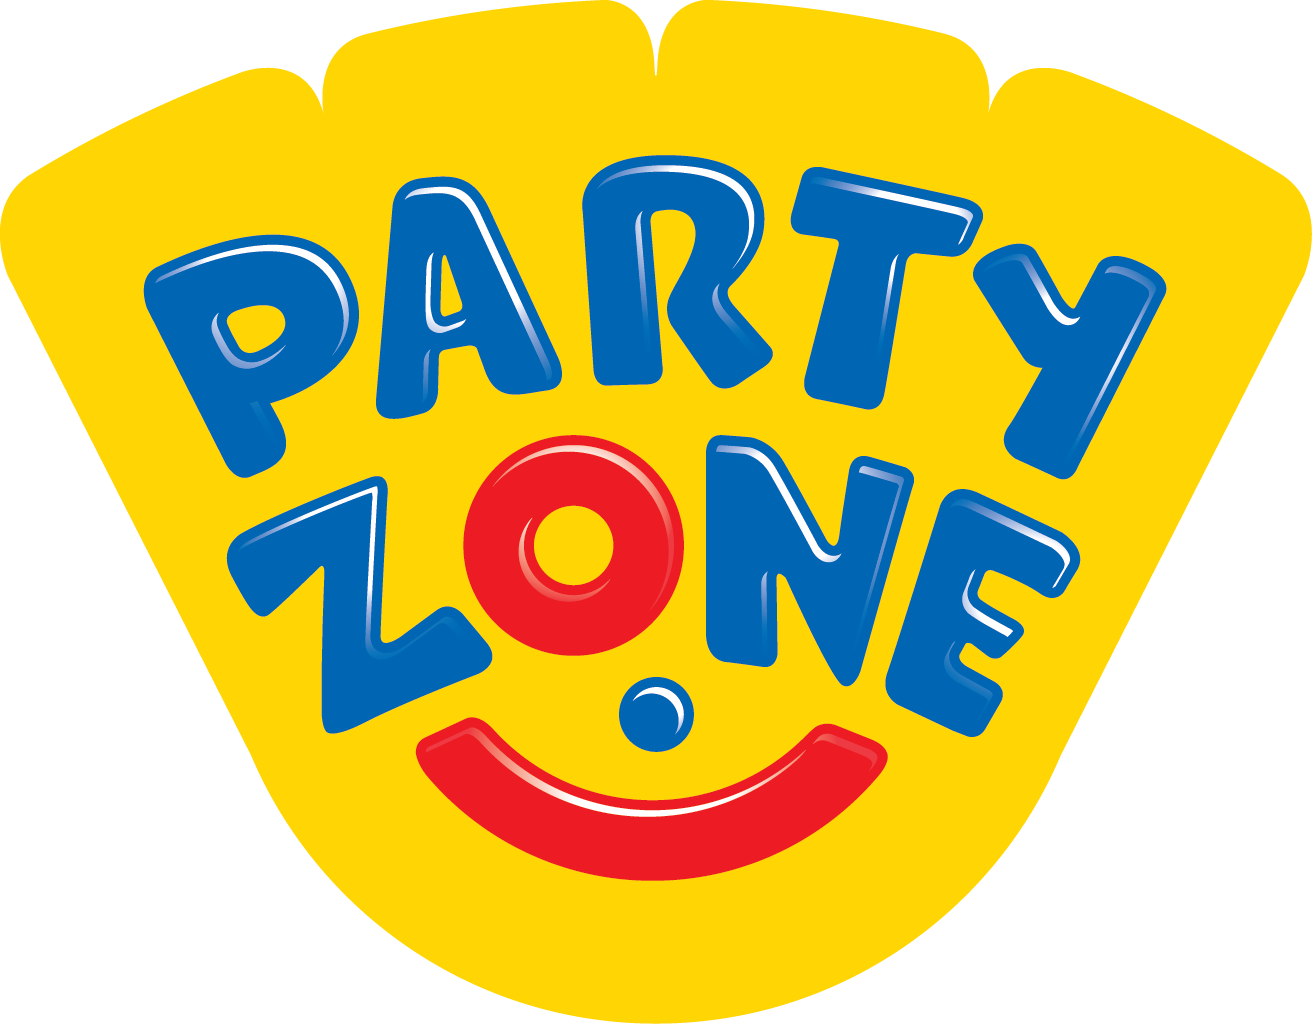 Partyzone